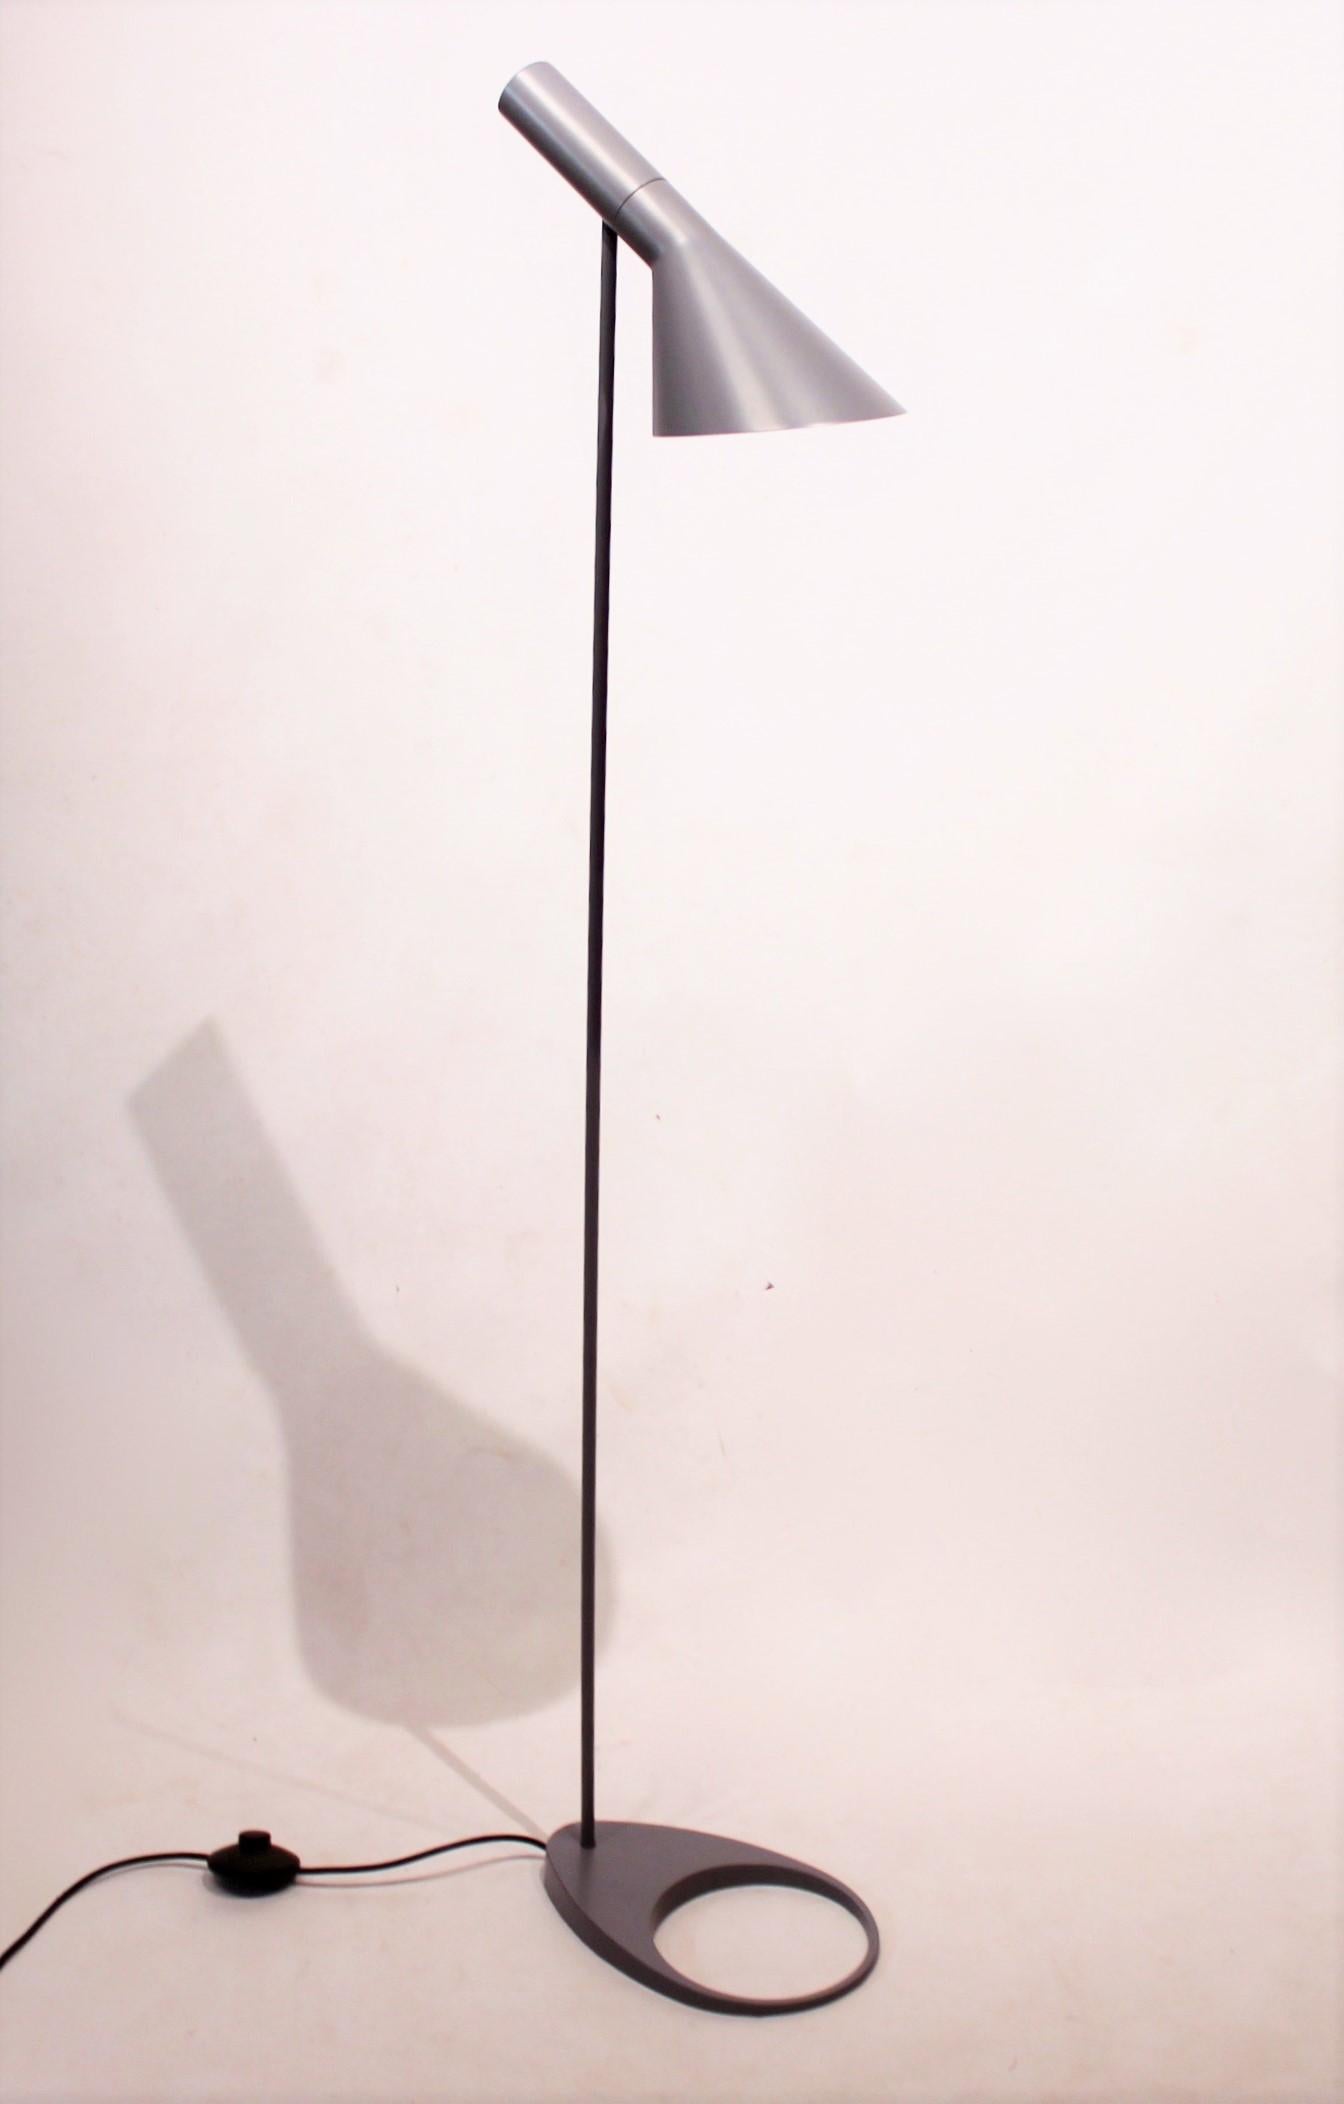 Le lampadaire d'Arne Jacobsen, conçu en gris pour l'hôtel SAS de Copenhague en 1957 et produit par Louis Poulsen, est une icône de l'élégance intemporelle et du design fonctionnel. Avec sa tête inclinable distinctive et un interrupteur intégré sur